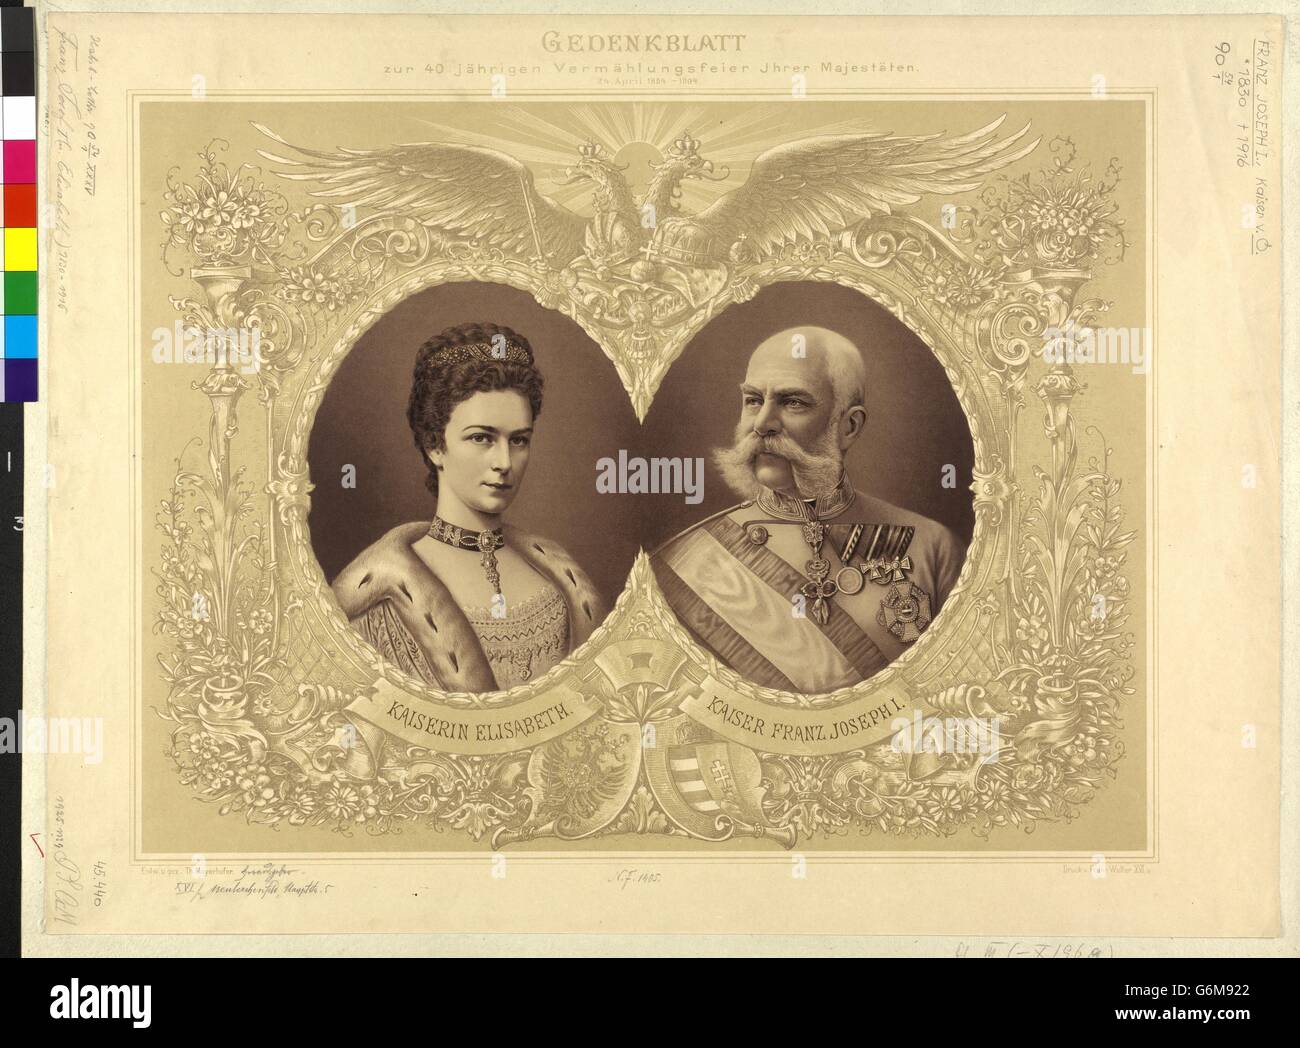 Gedenkblatt Zur 40 finanzielle Vermählungsfeier Ihrer Majestäten 24. April 1854-1894 Stockfoto